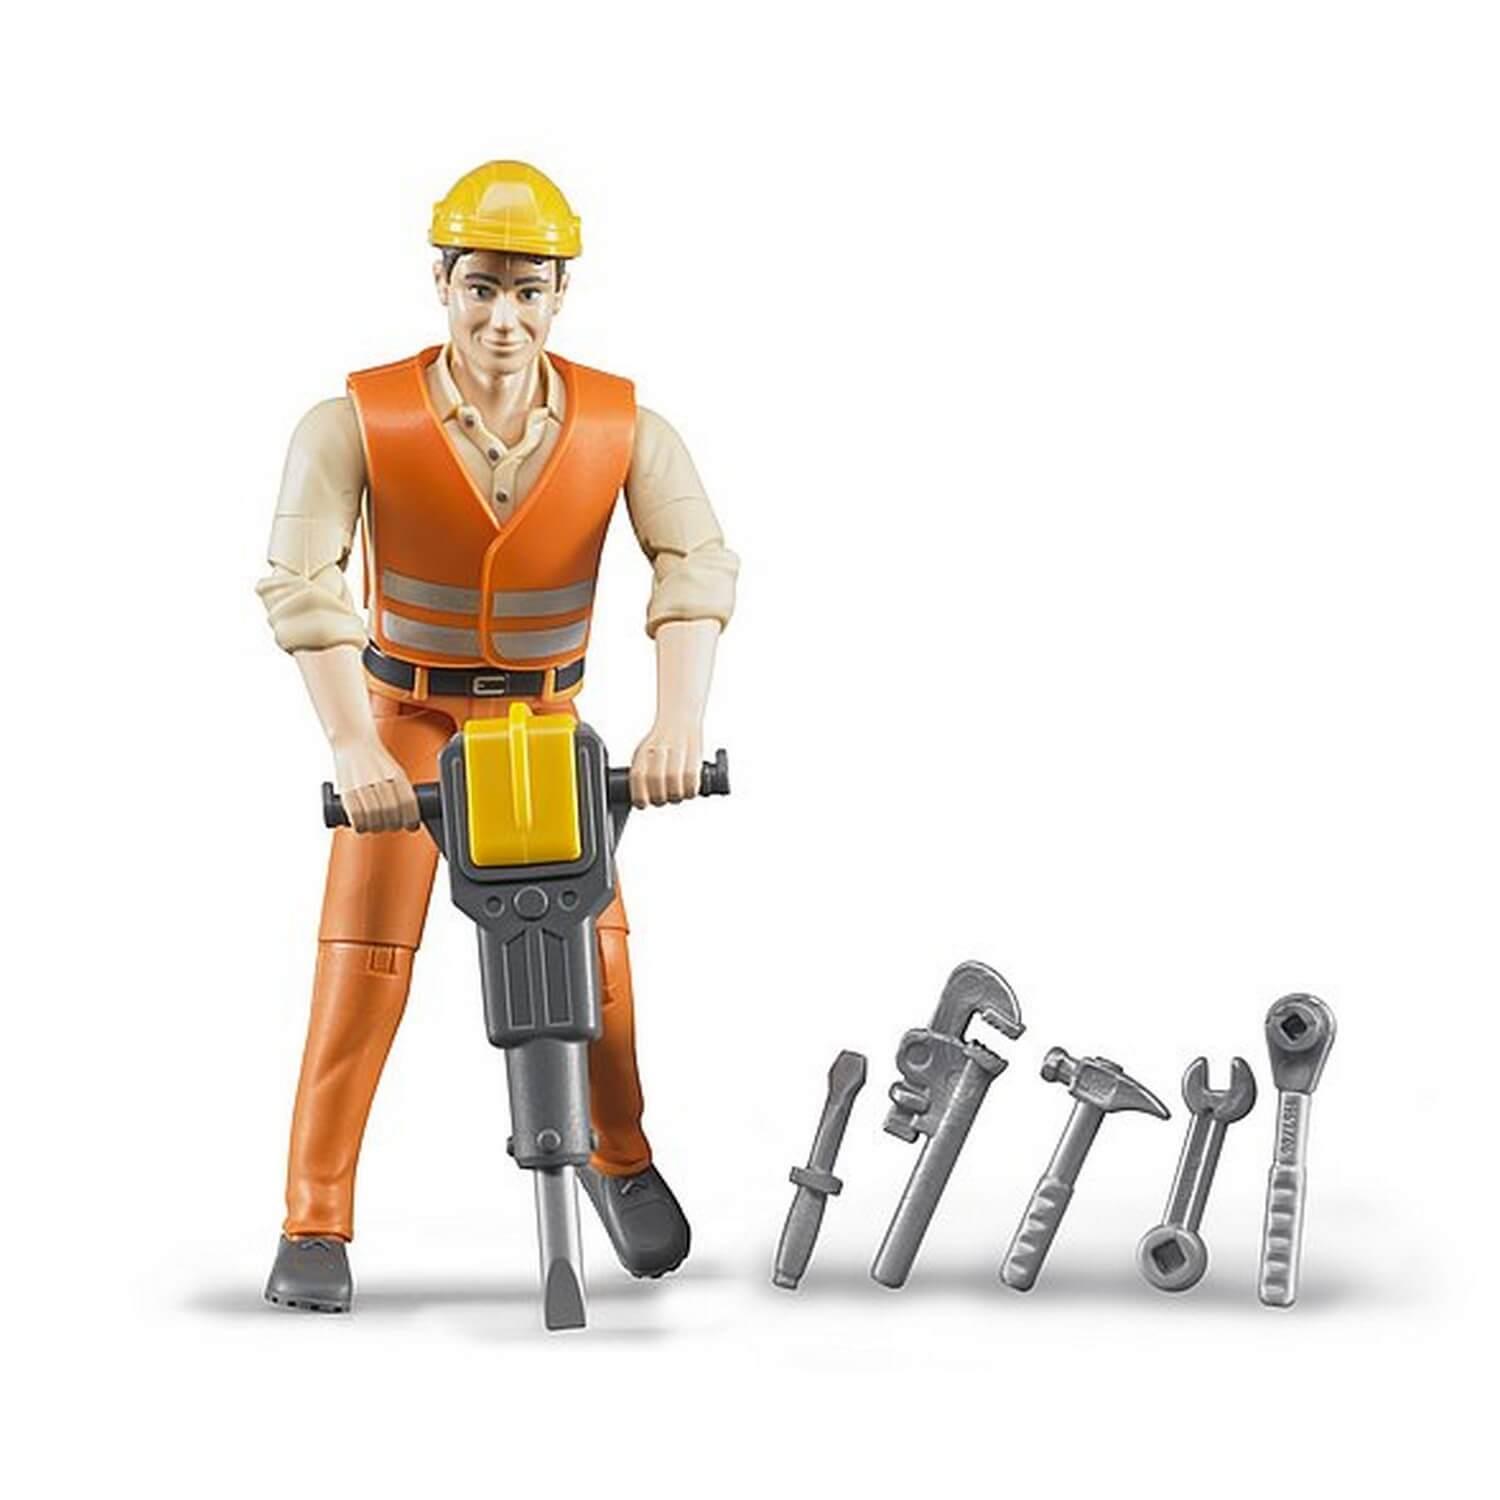 Figurine ouvrier de chantier avec accessoires